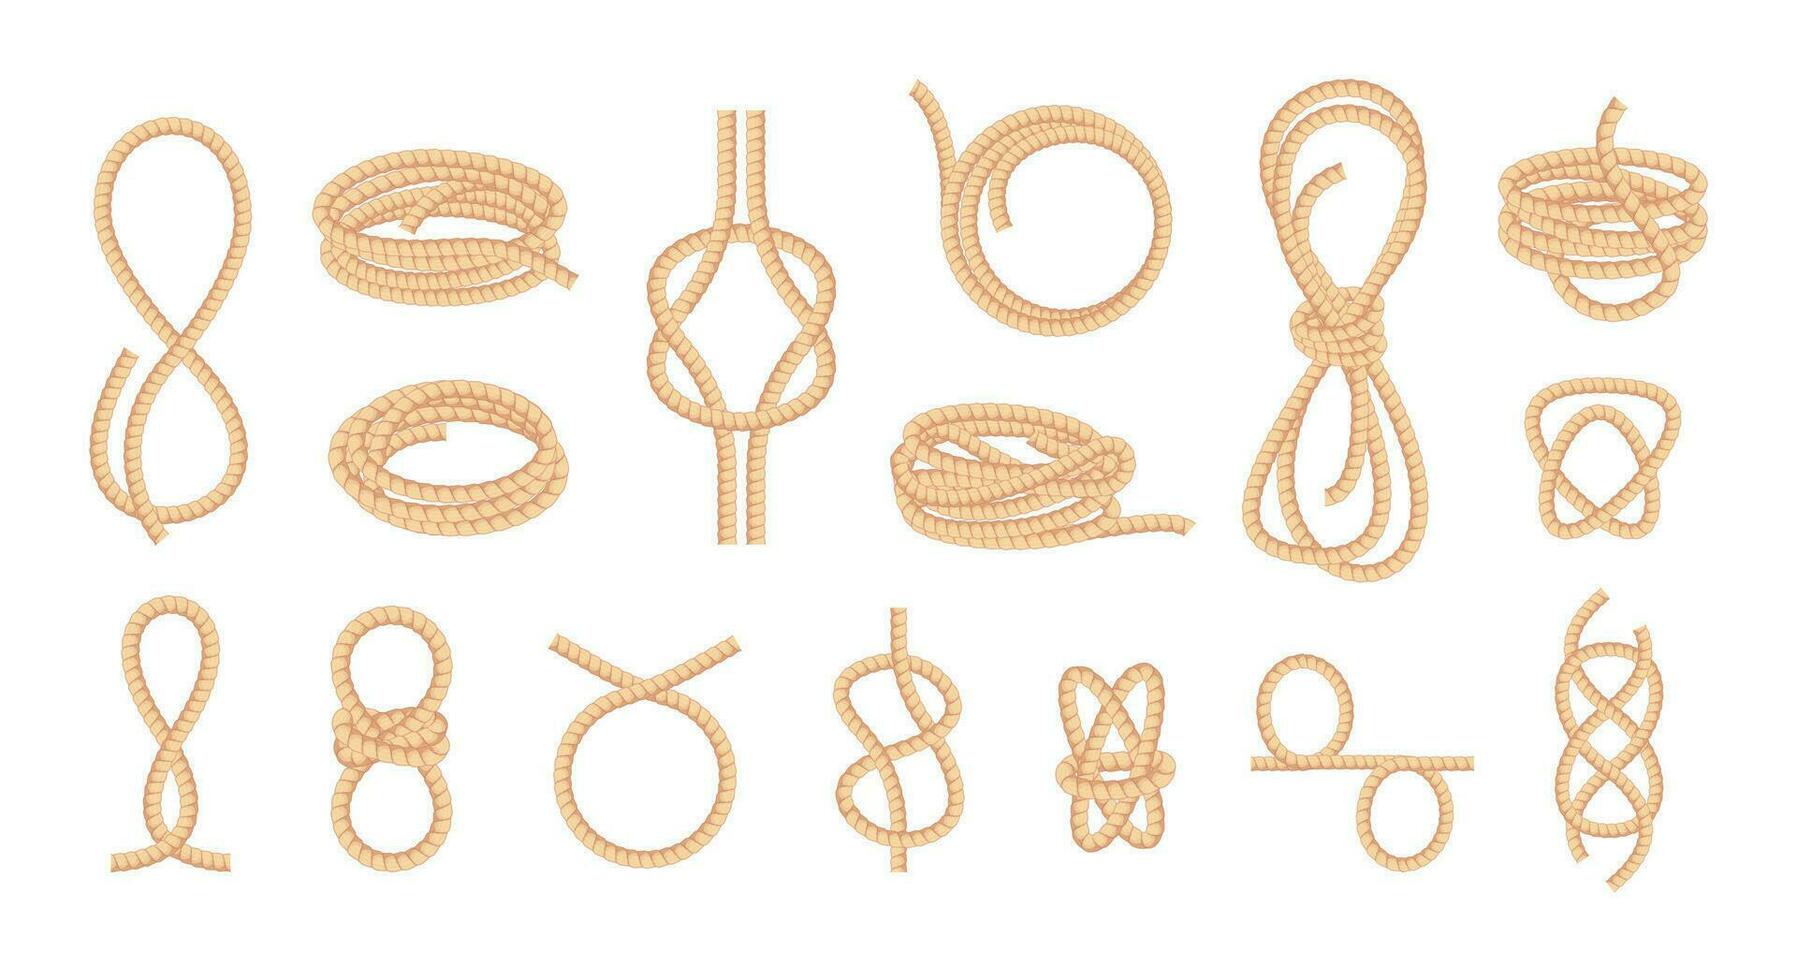 annodato corde. loop bowknot contorto curva dritto fibra filo, intrecciato cordone nodo corda cravatta elementi cartone animato piatto stile. vettore isolato collezione